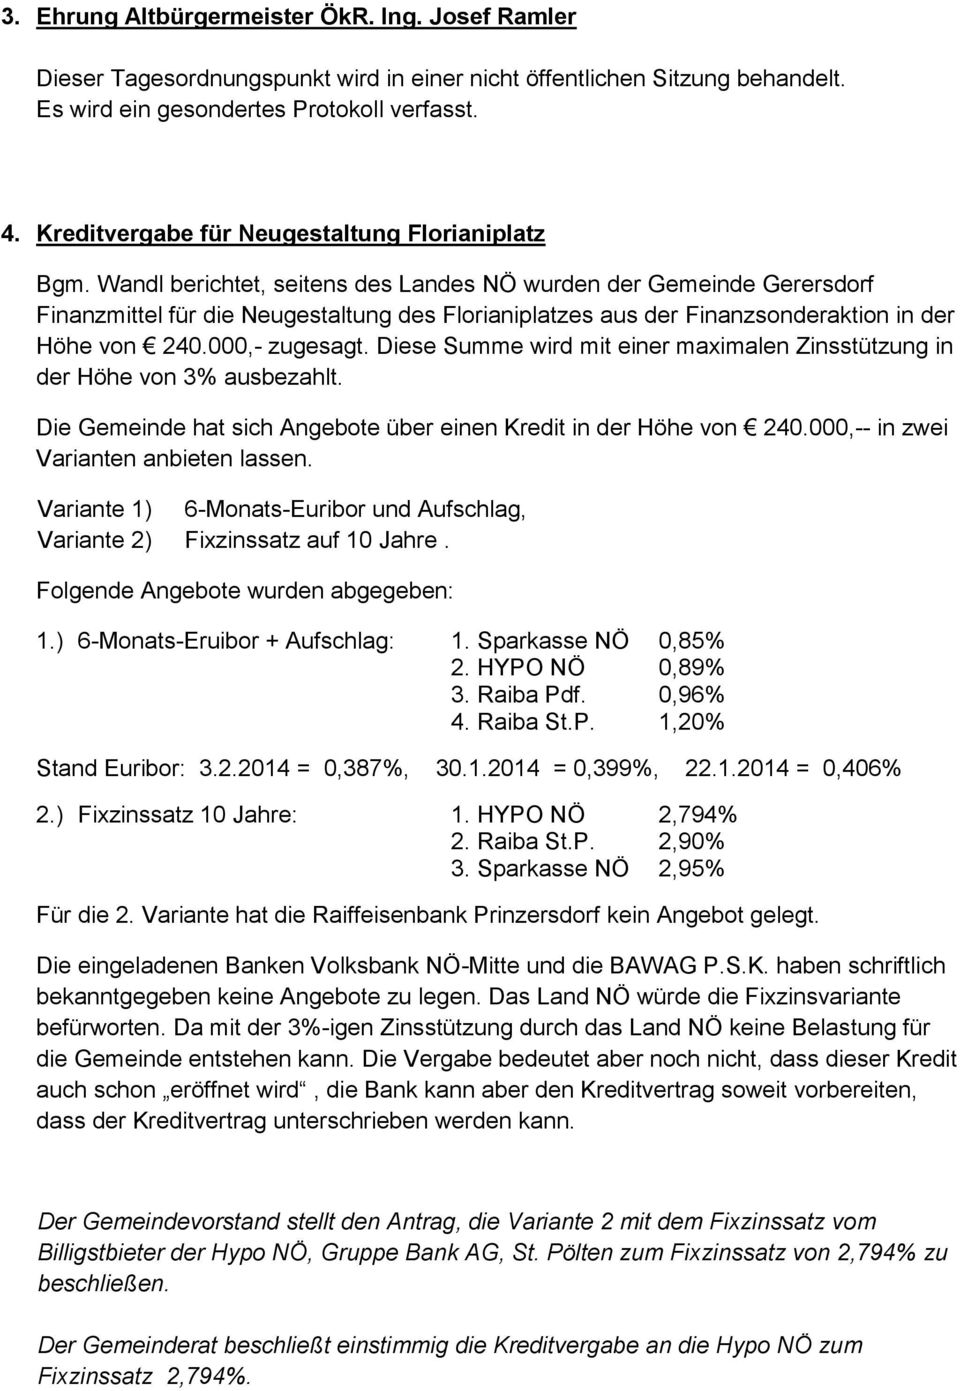 Wandl berichtet, seitens des Landes NÖ wurden der Gemeinde Gerersdorf Finanzmittel für die Neugestaltung des Florianiplatzes aus der Finanzsonderaktion in der Höhe von 240.000,- zugesagt.